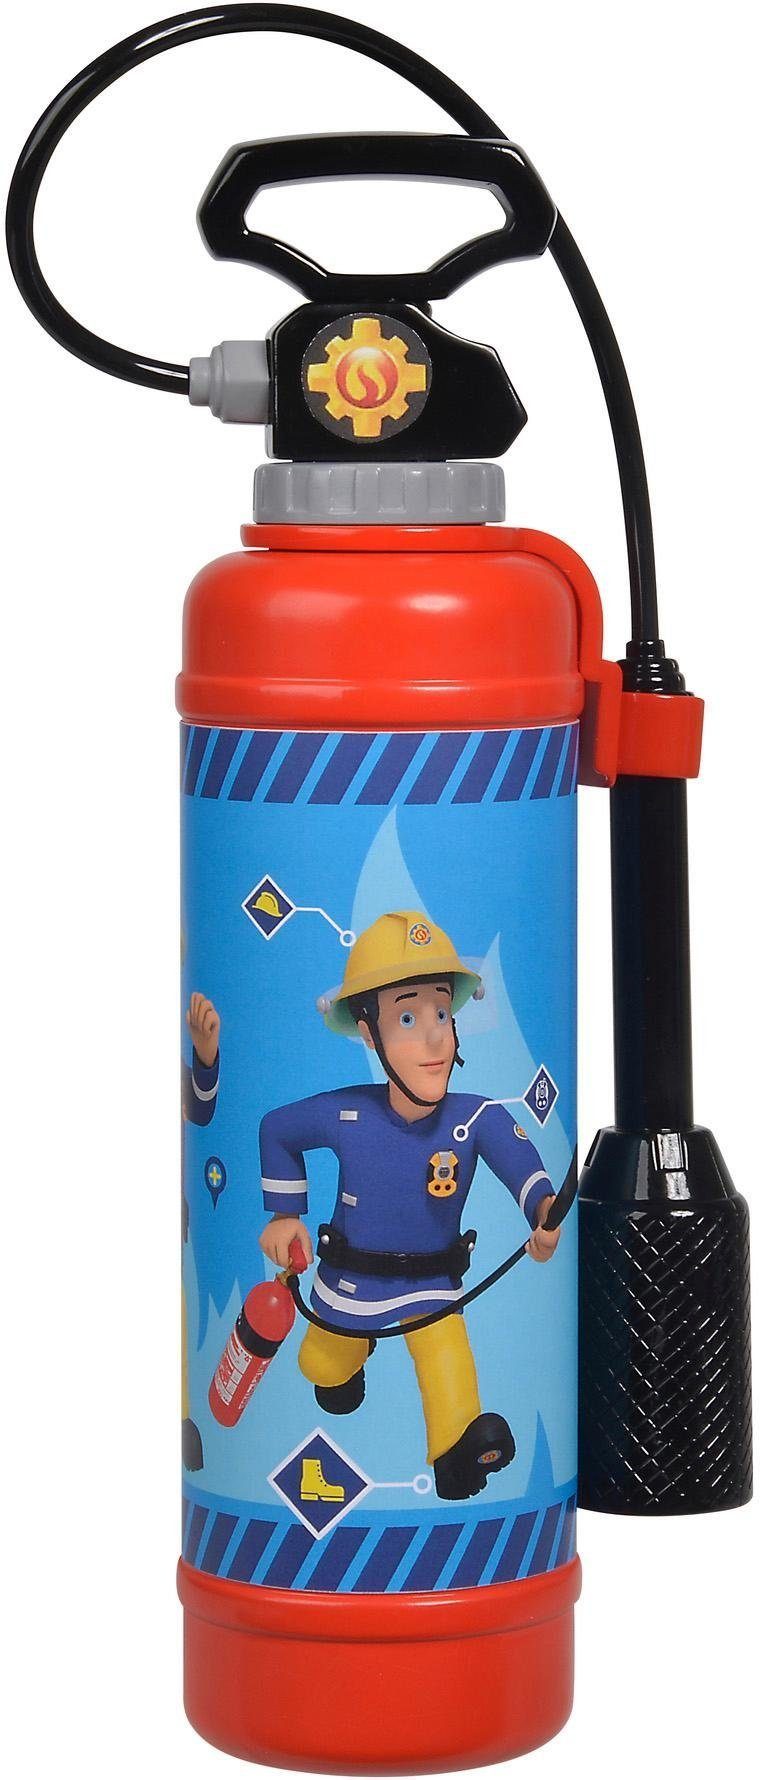 Feuerlöscher Pro SIMBA Feuerwehrmann Sam, Badespielzeug